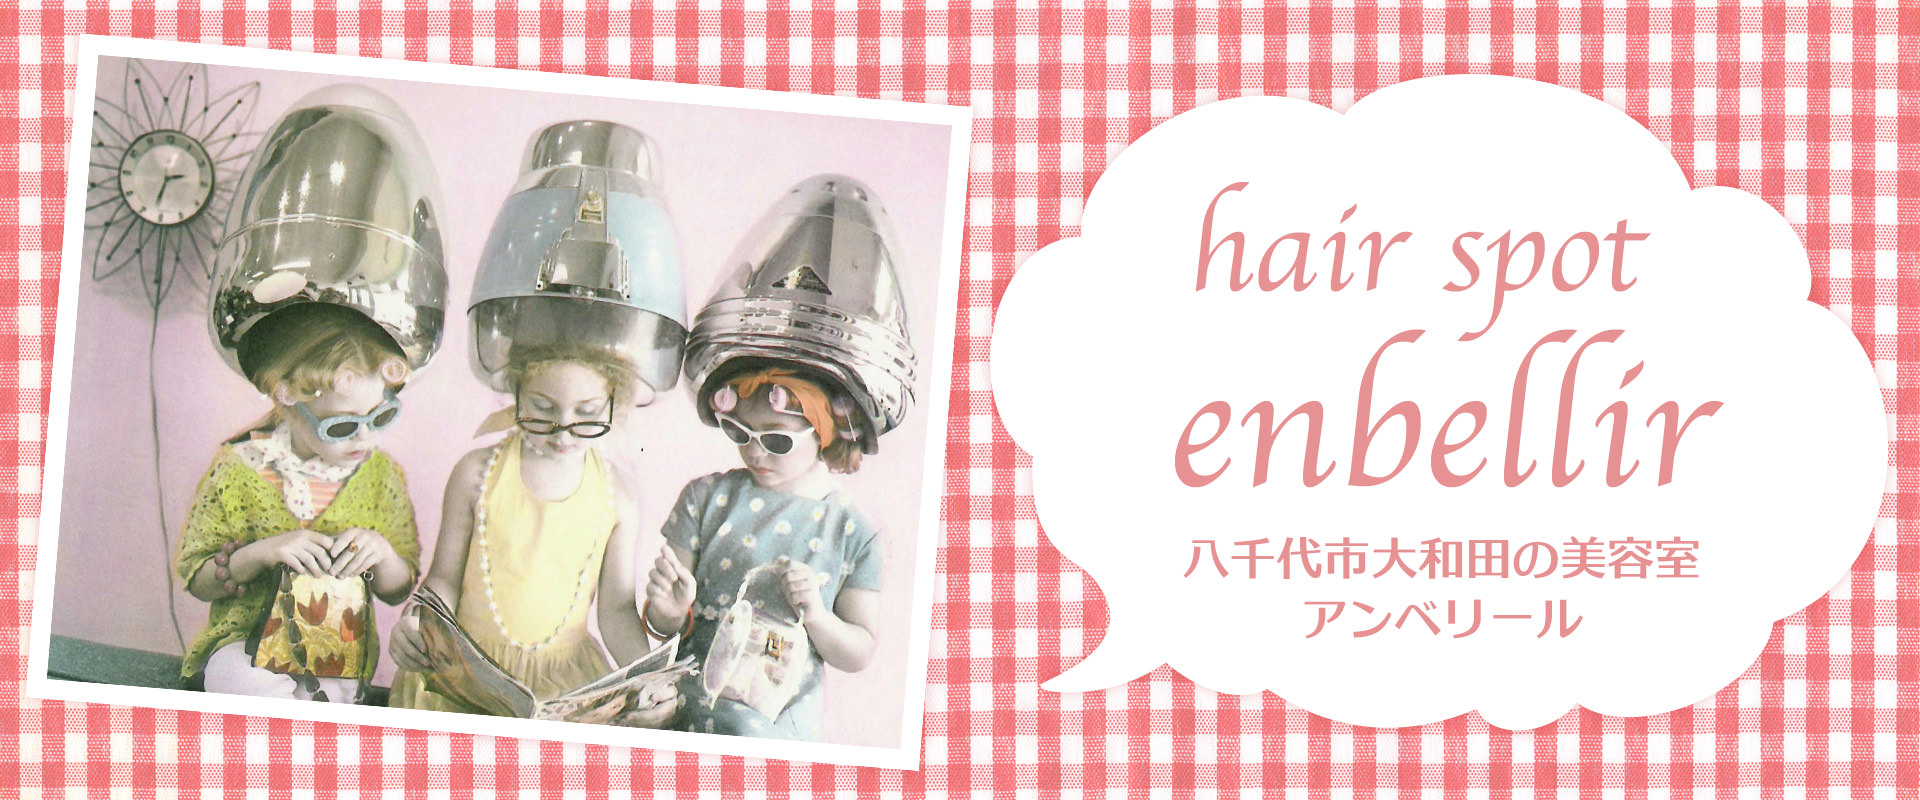 八千代市大和田の美容室hair spot enbellirの、もうひとつの看板である３人の女の子の写真です。